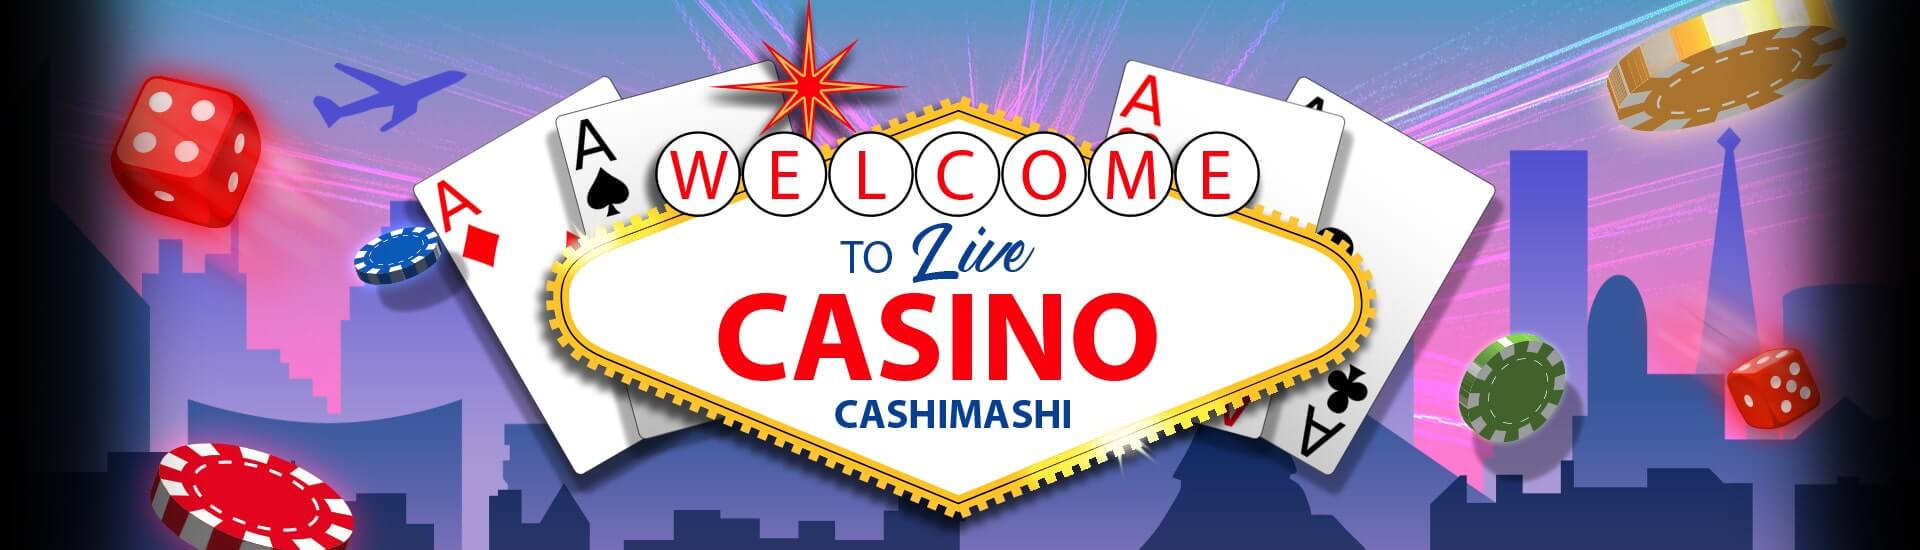 cashimashi live casino